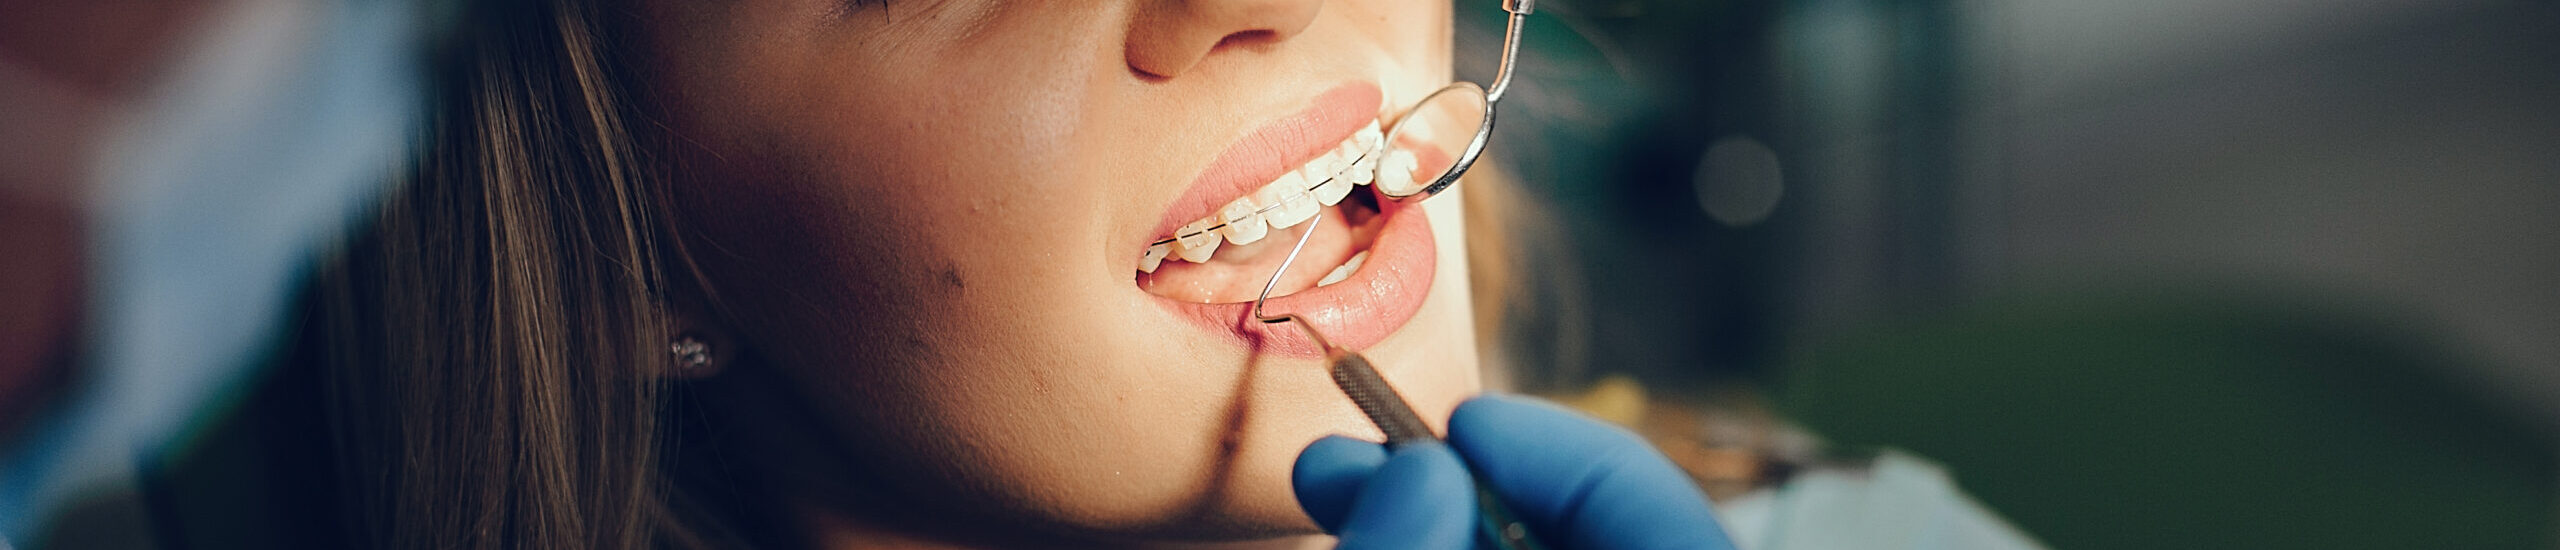 Chica en dentista en control dental